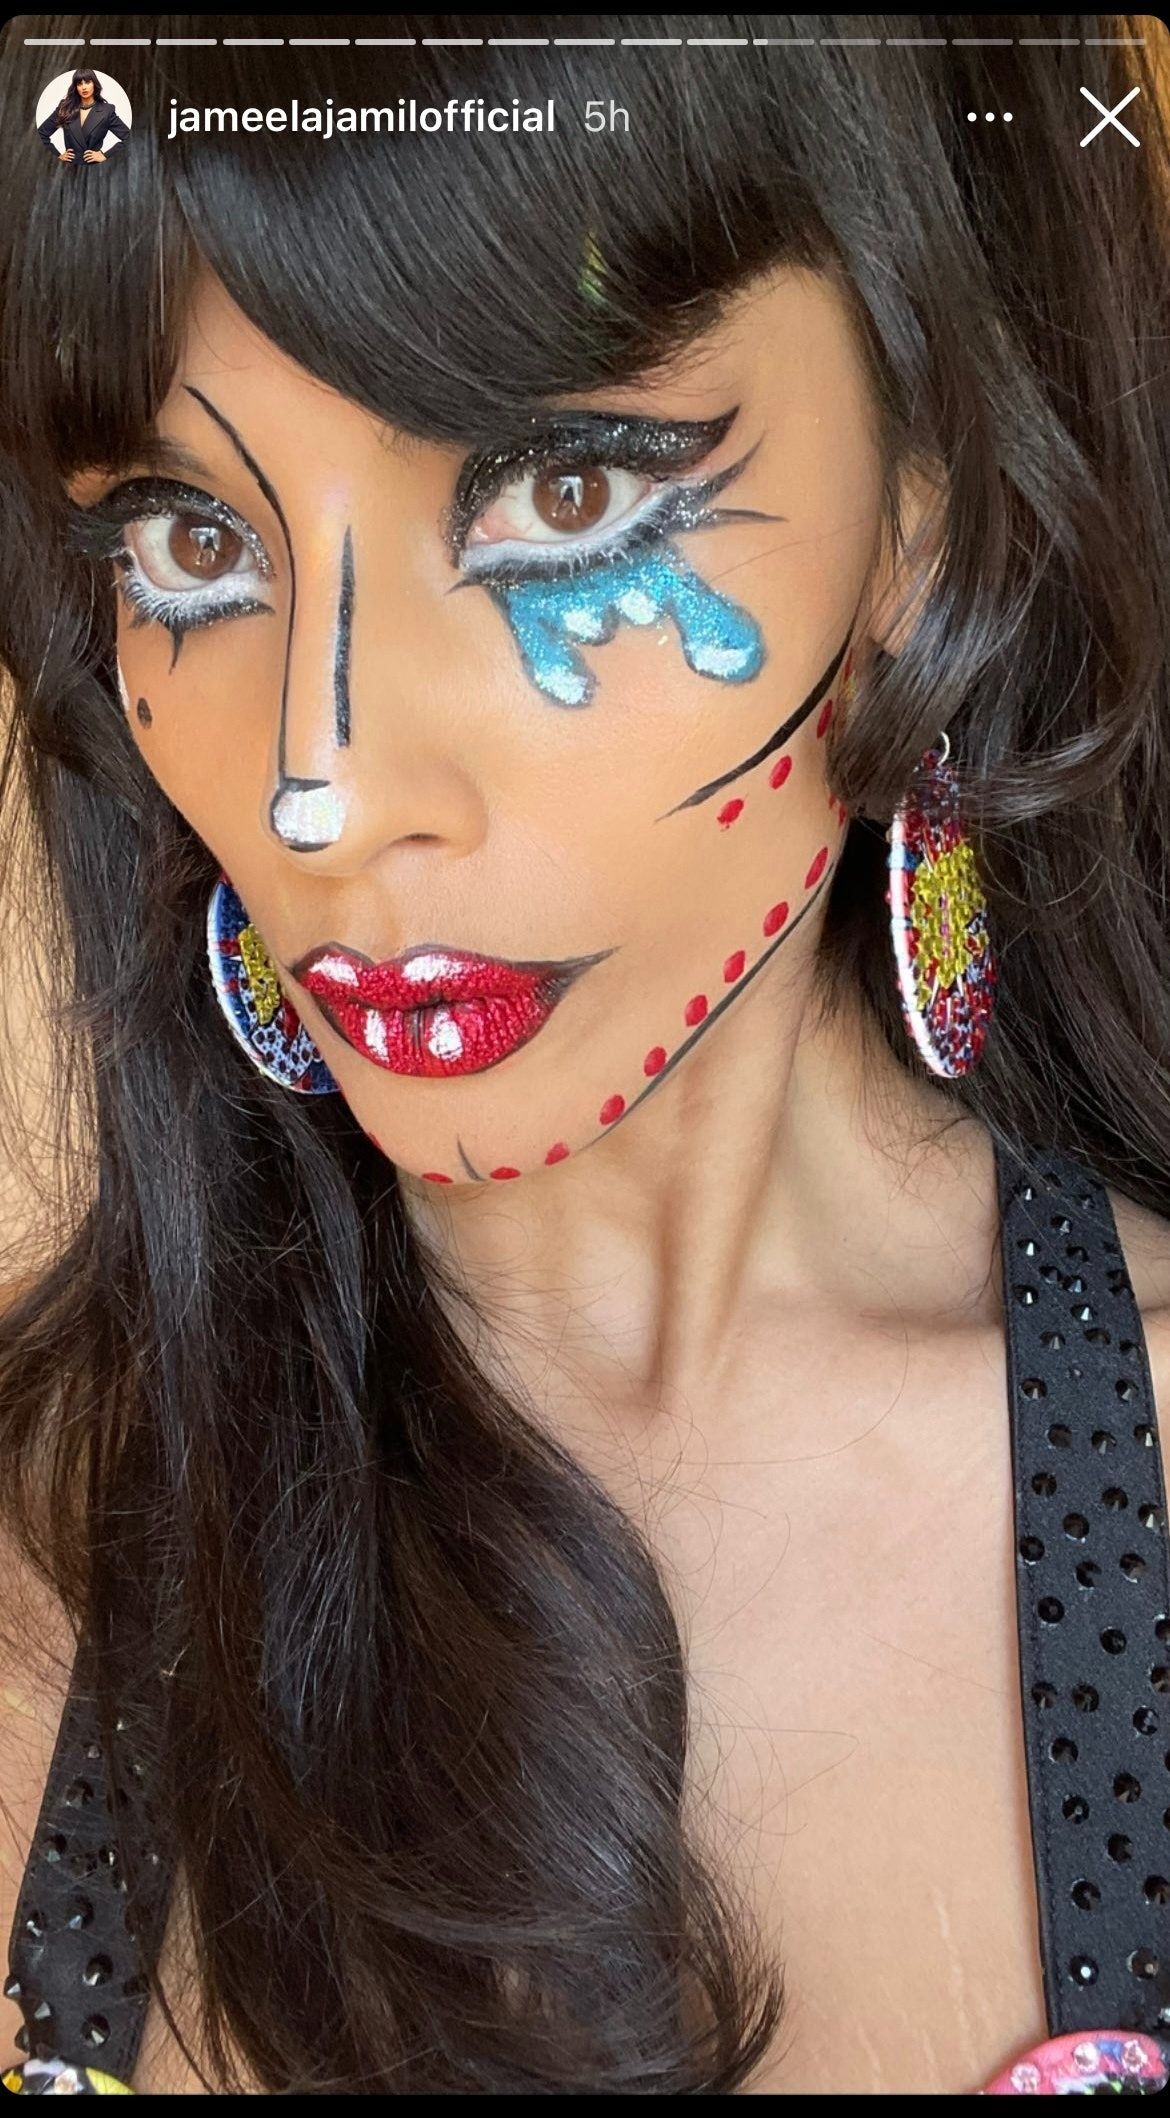 Jameela Jamil hat ihr eigenes Pop-Art-inspiriertes Make-up für 'Legendary' gemacht